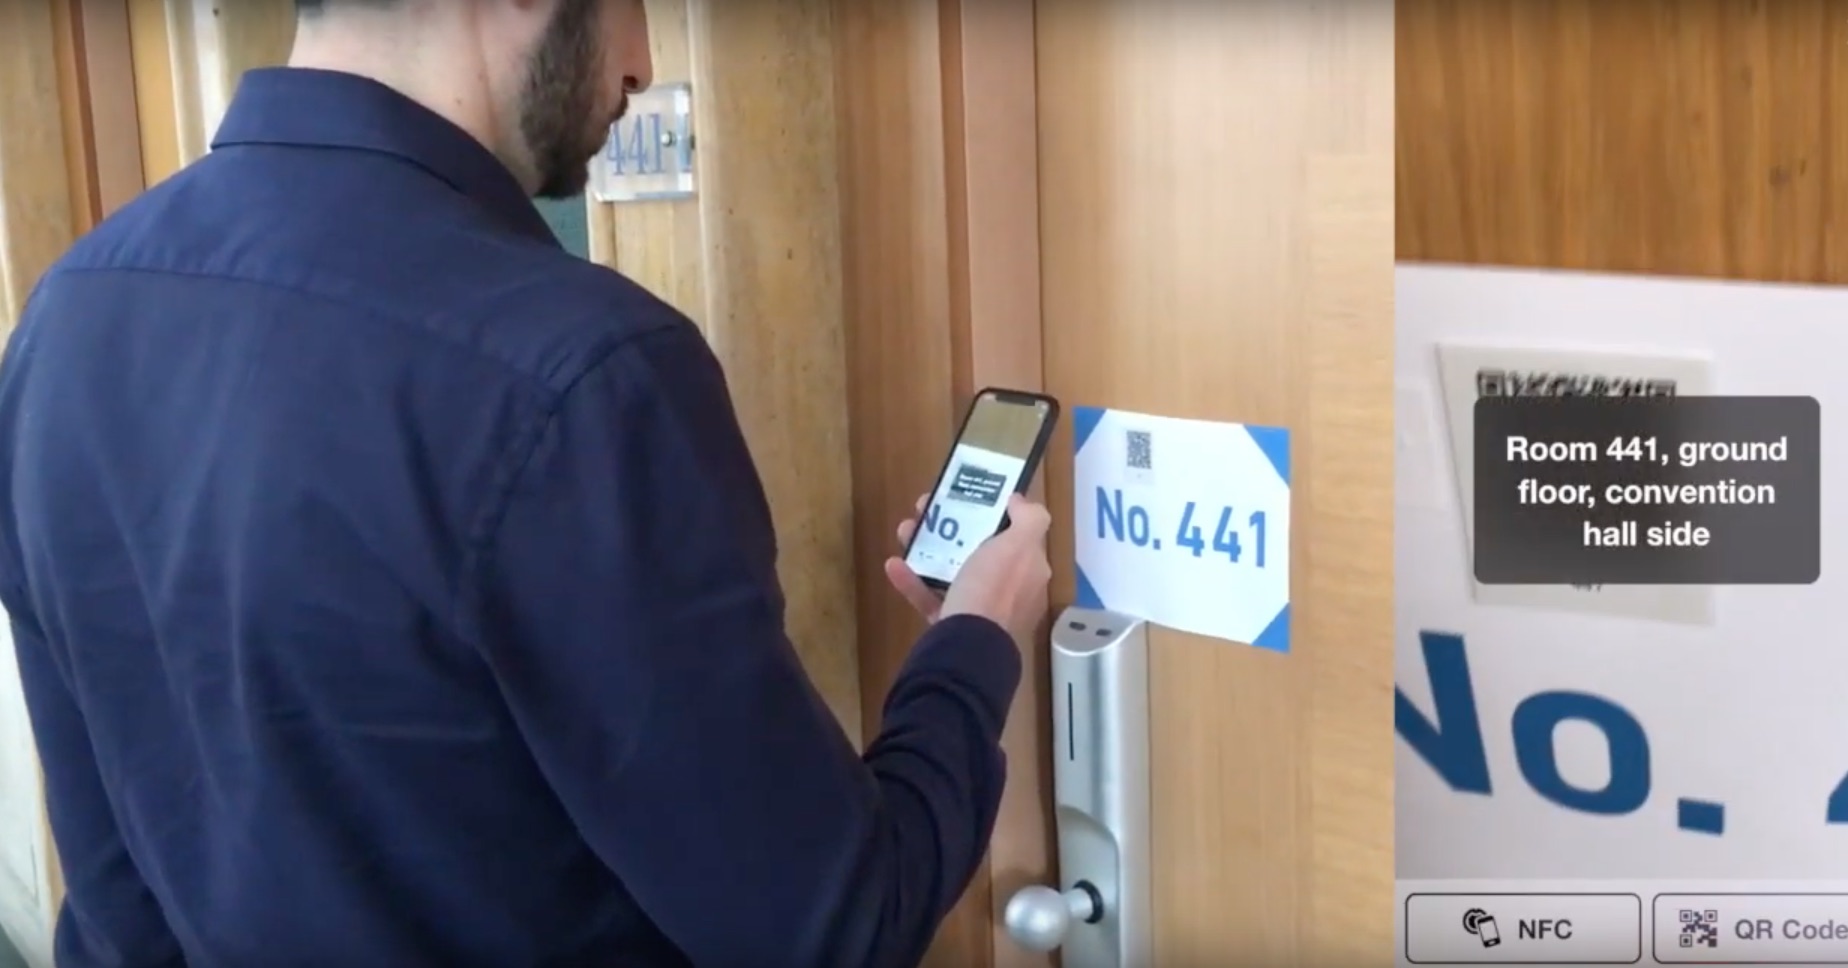 L'ospite legge il numero della stanza scansionando il QR-Code posto sulla maniglia